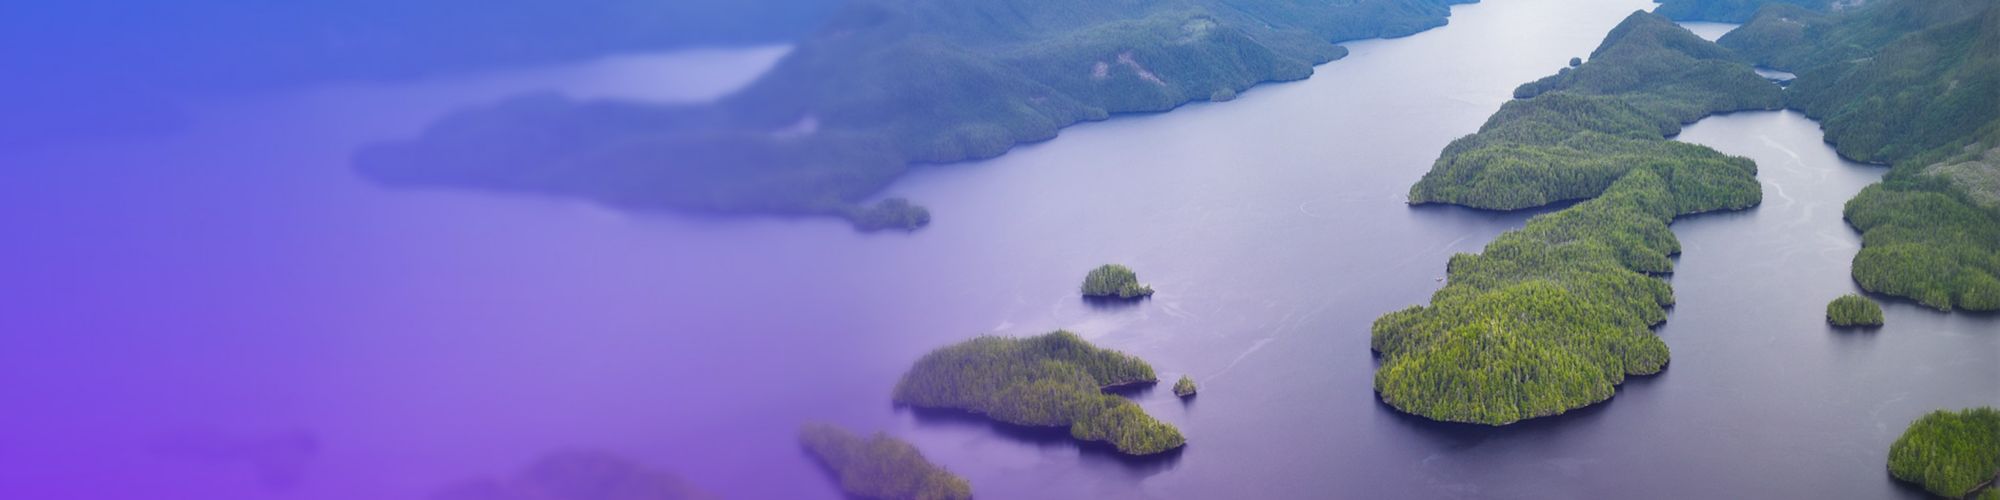 Îles boisées dans un lac avec montagnes